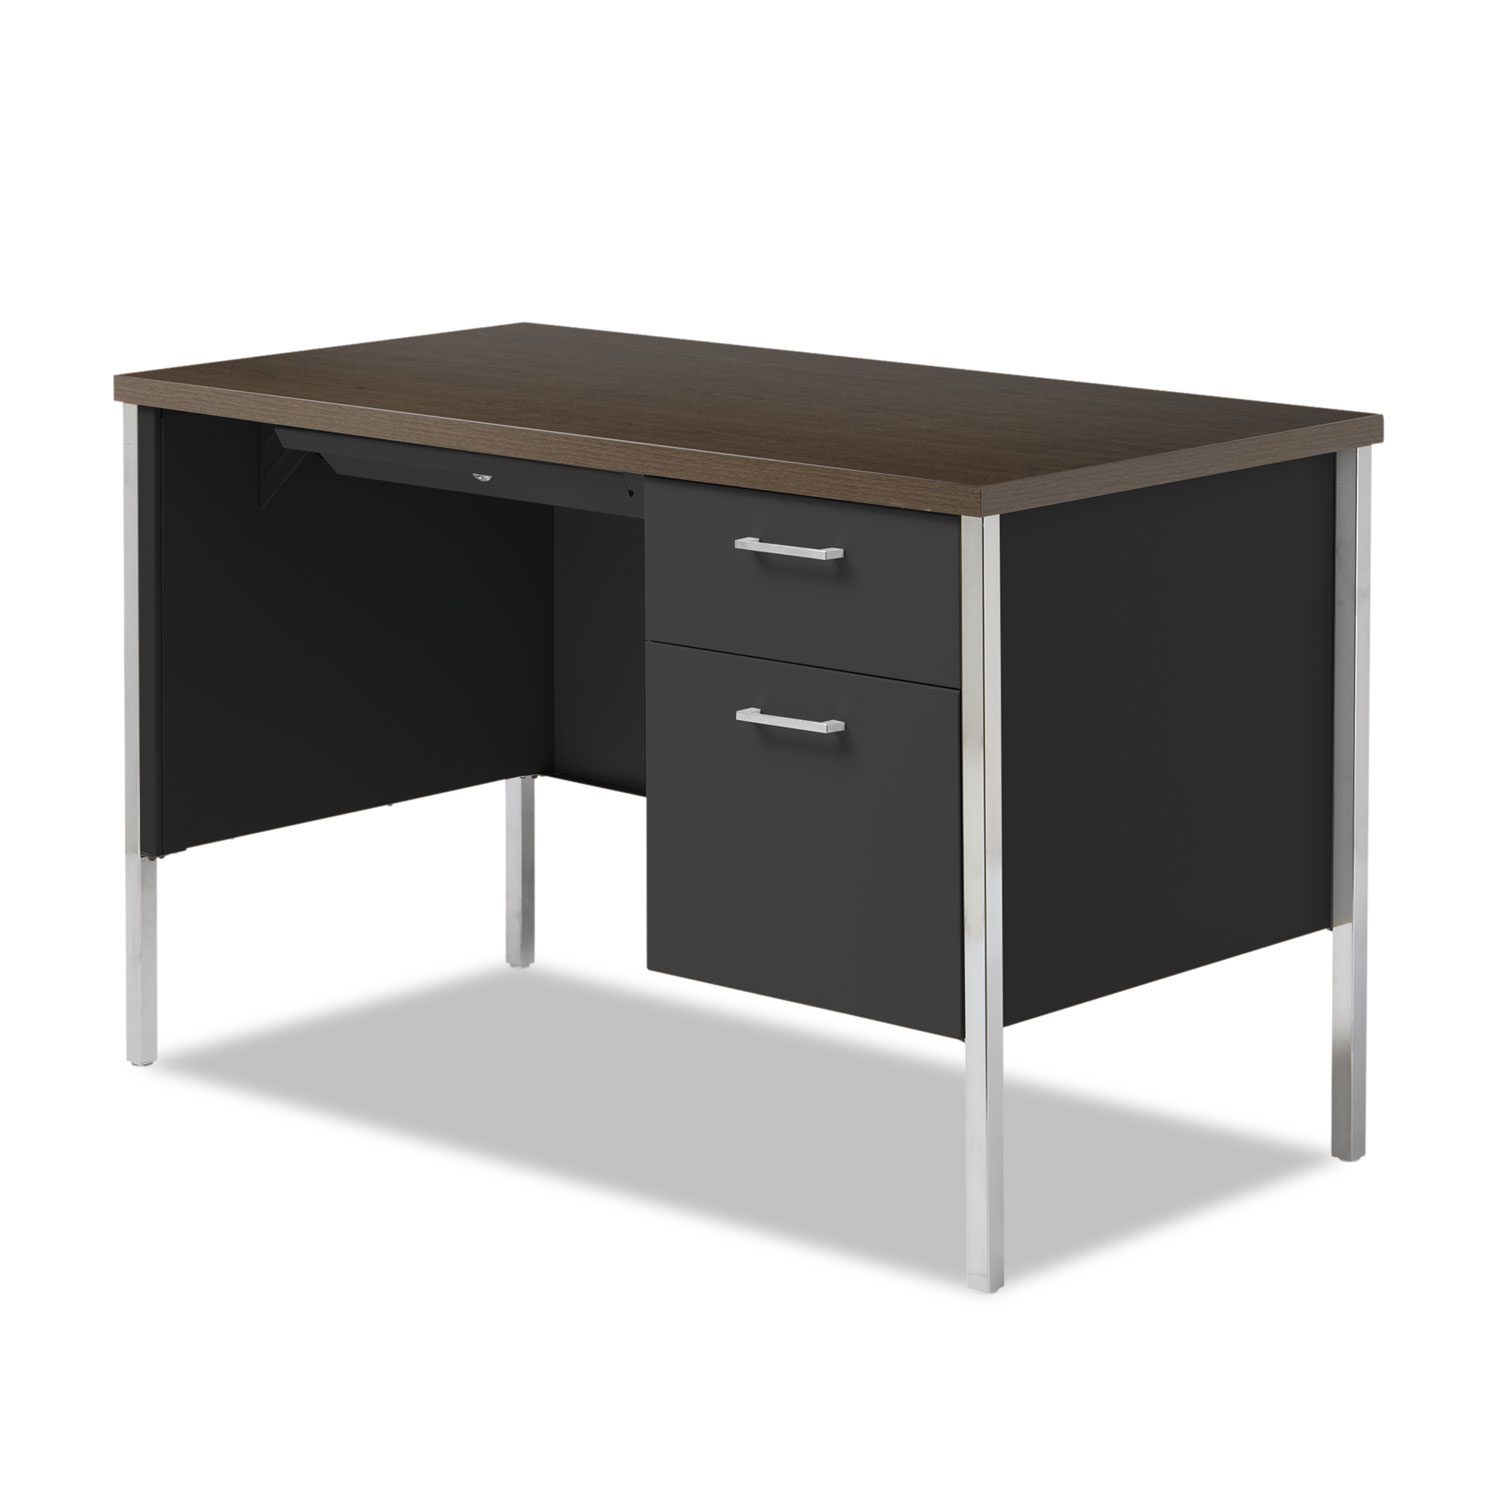 Single Pedestal Steel Desk Metal Desk 45 25w X 24d X 29 5h